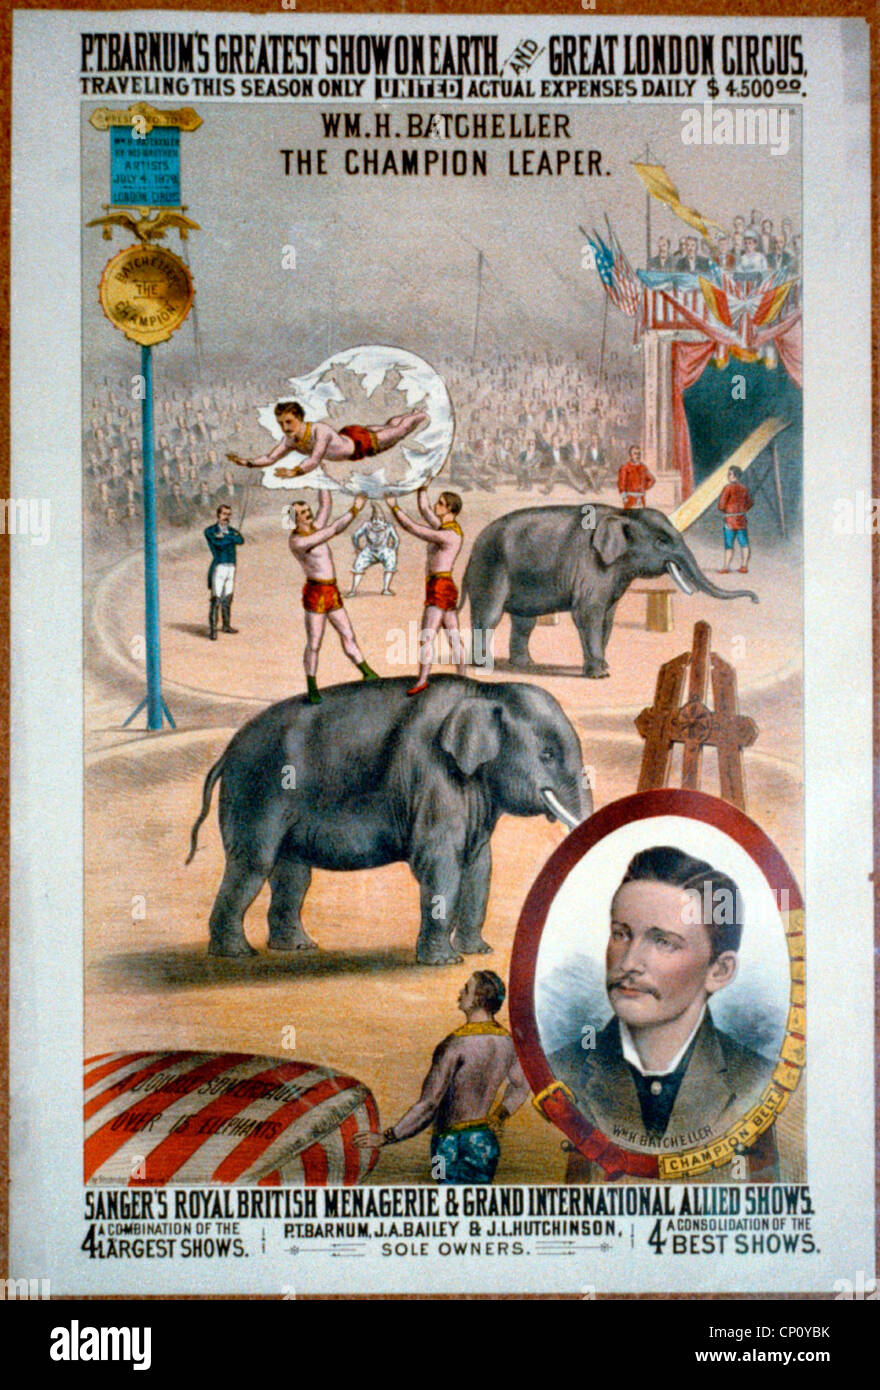 P.T. Barnum del mayor espectáculo de la tierra, y el gran circo de Londres, Vintage poster de circo, circa 1879 Foto de stock